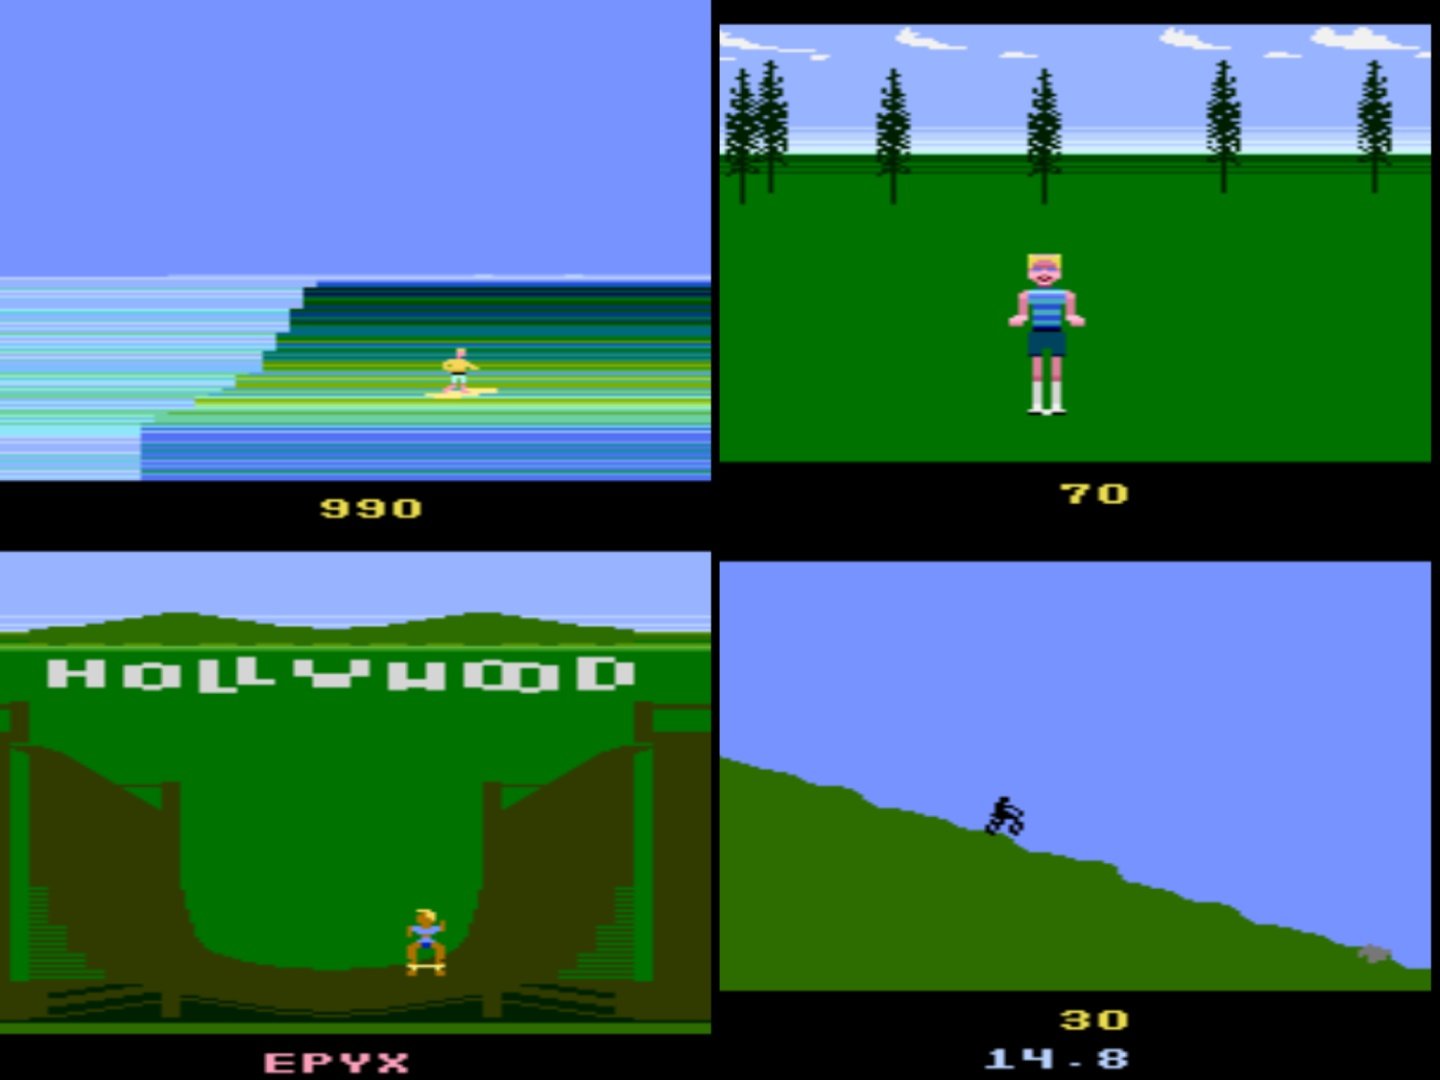 The Atari 2600 version of California Games